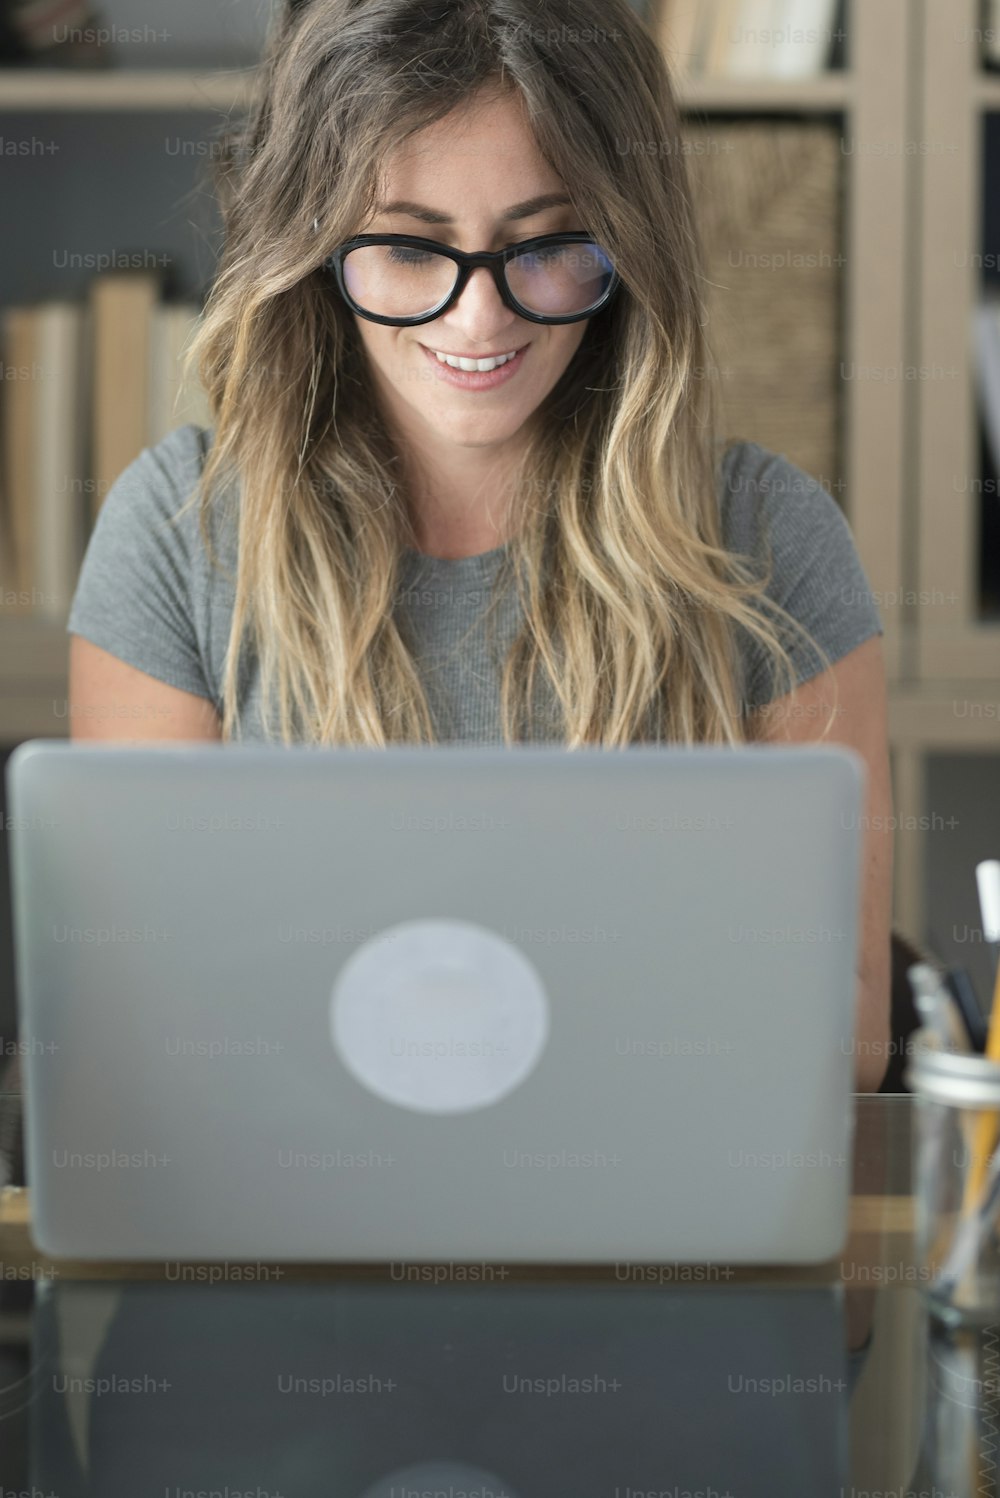 La donna graziosa con gli occhiali gli occhiali lavora a casa sul computer portatile - persone femminili in smart working alla scrivania dell'ufficio che guardano il monitor - concetto di stile di vita freelance professionale e moderno